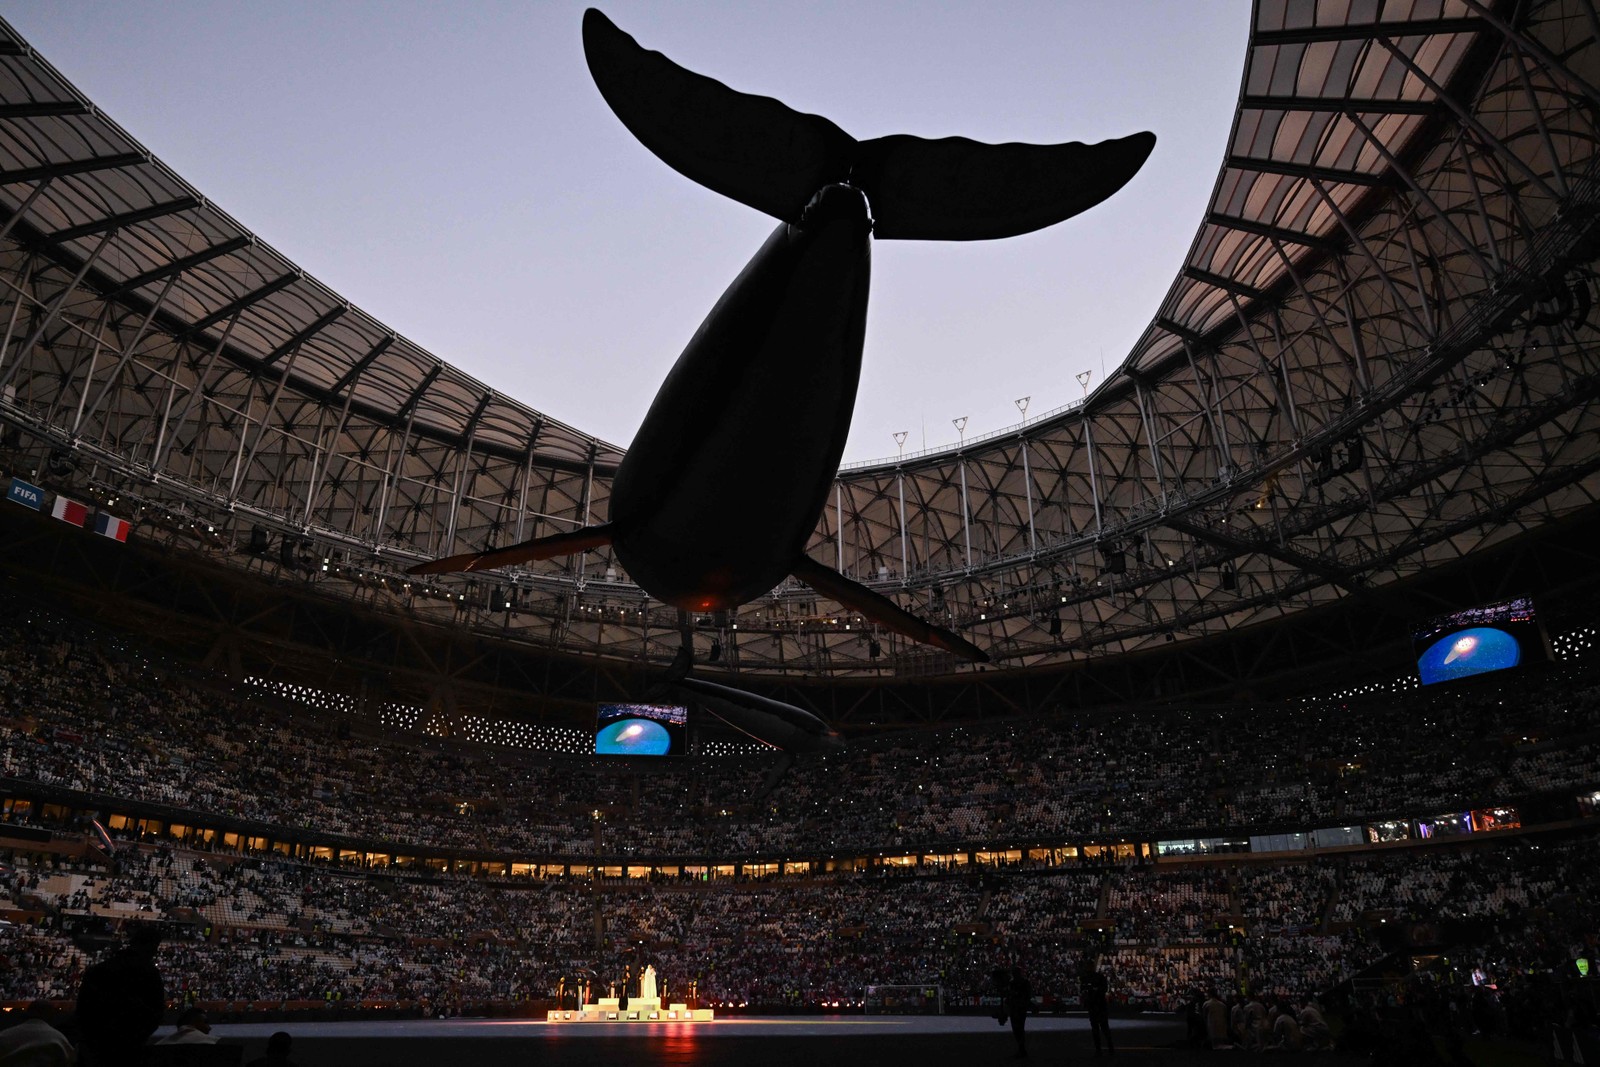 Baleias e golfinhos voadores giram ao redor do palco — Foto: Kirill KUDRYAVTSEV / AFP